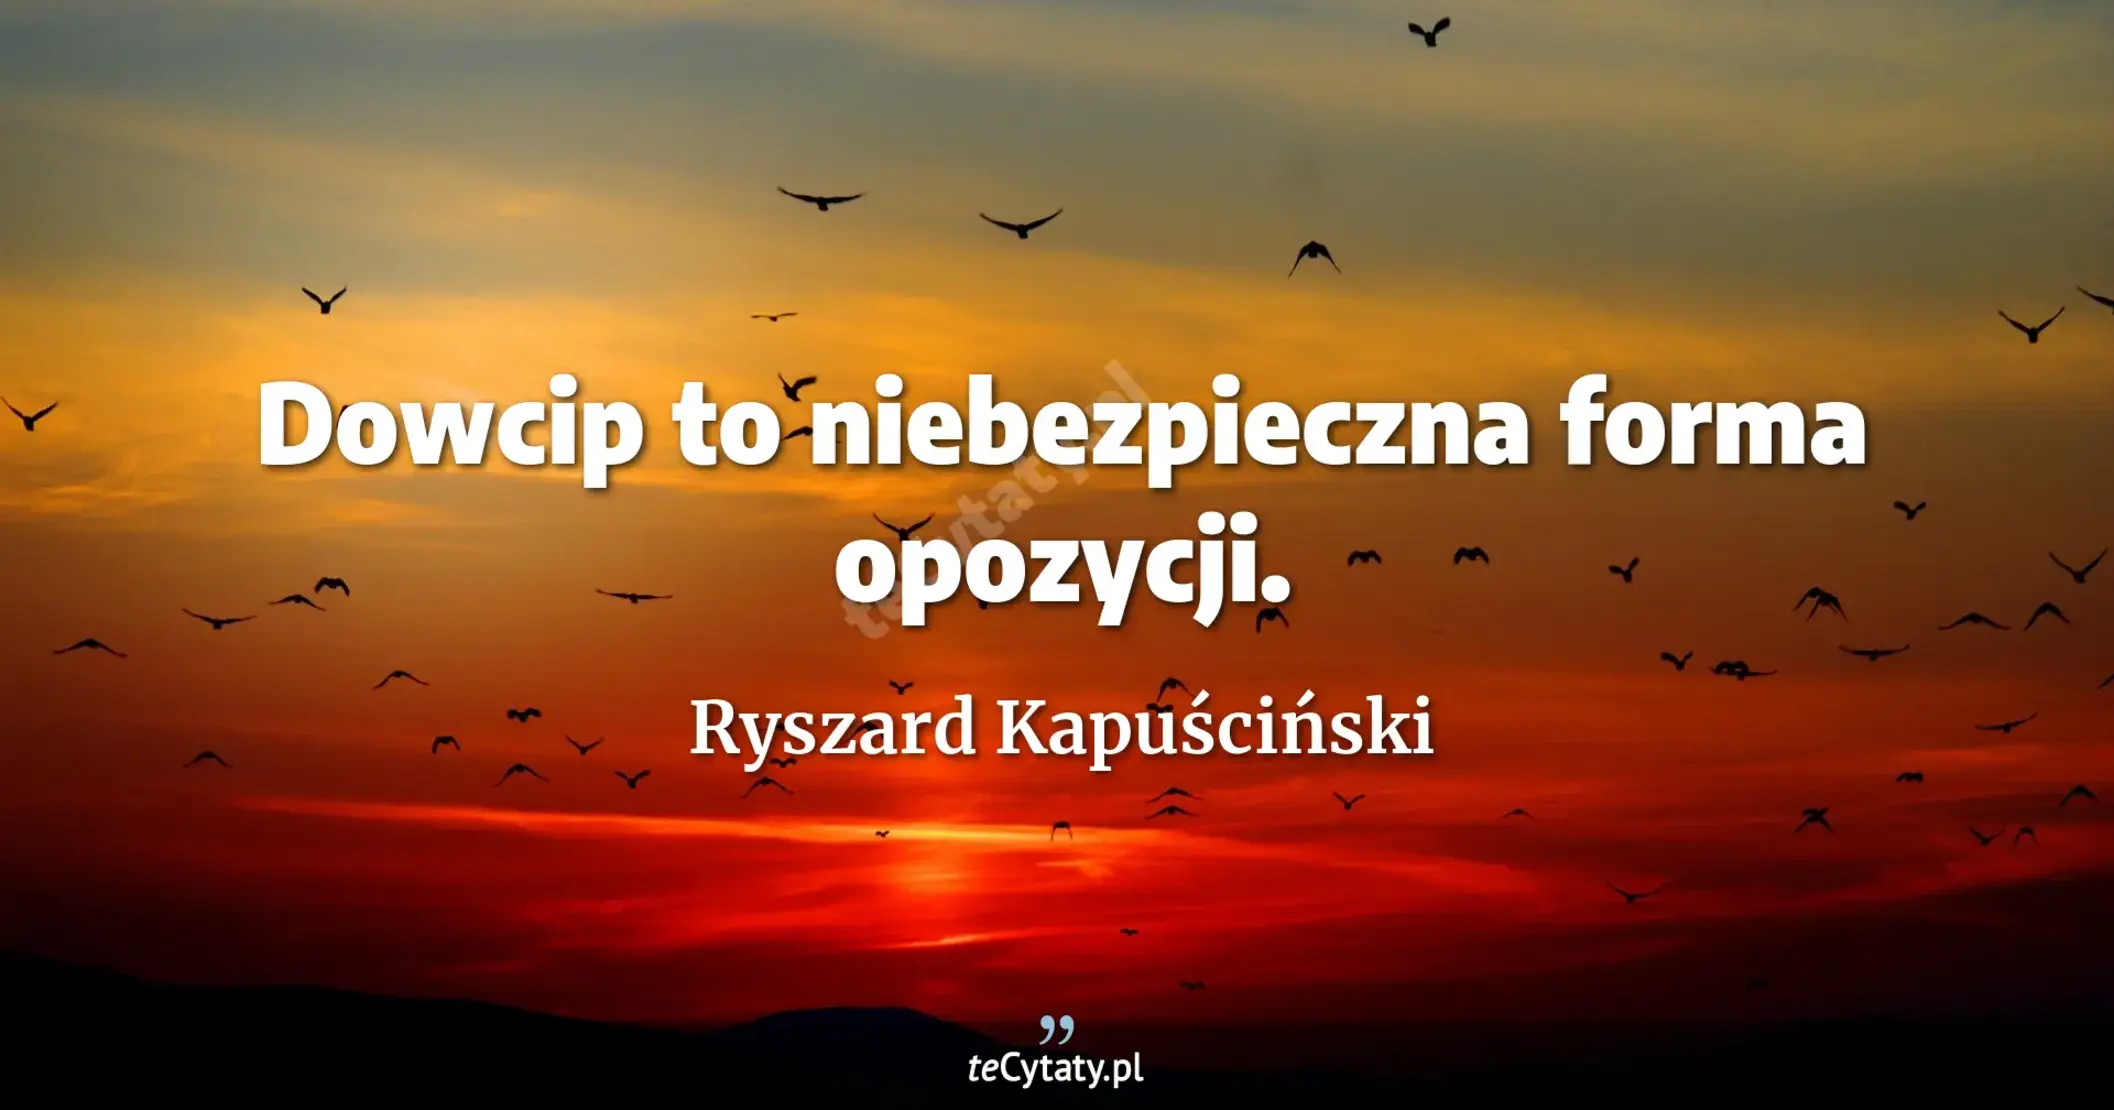 Dowcip to niebezpieczna forma opozycji. - Ryszard Kapuściński